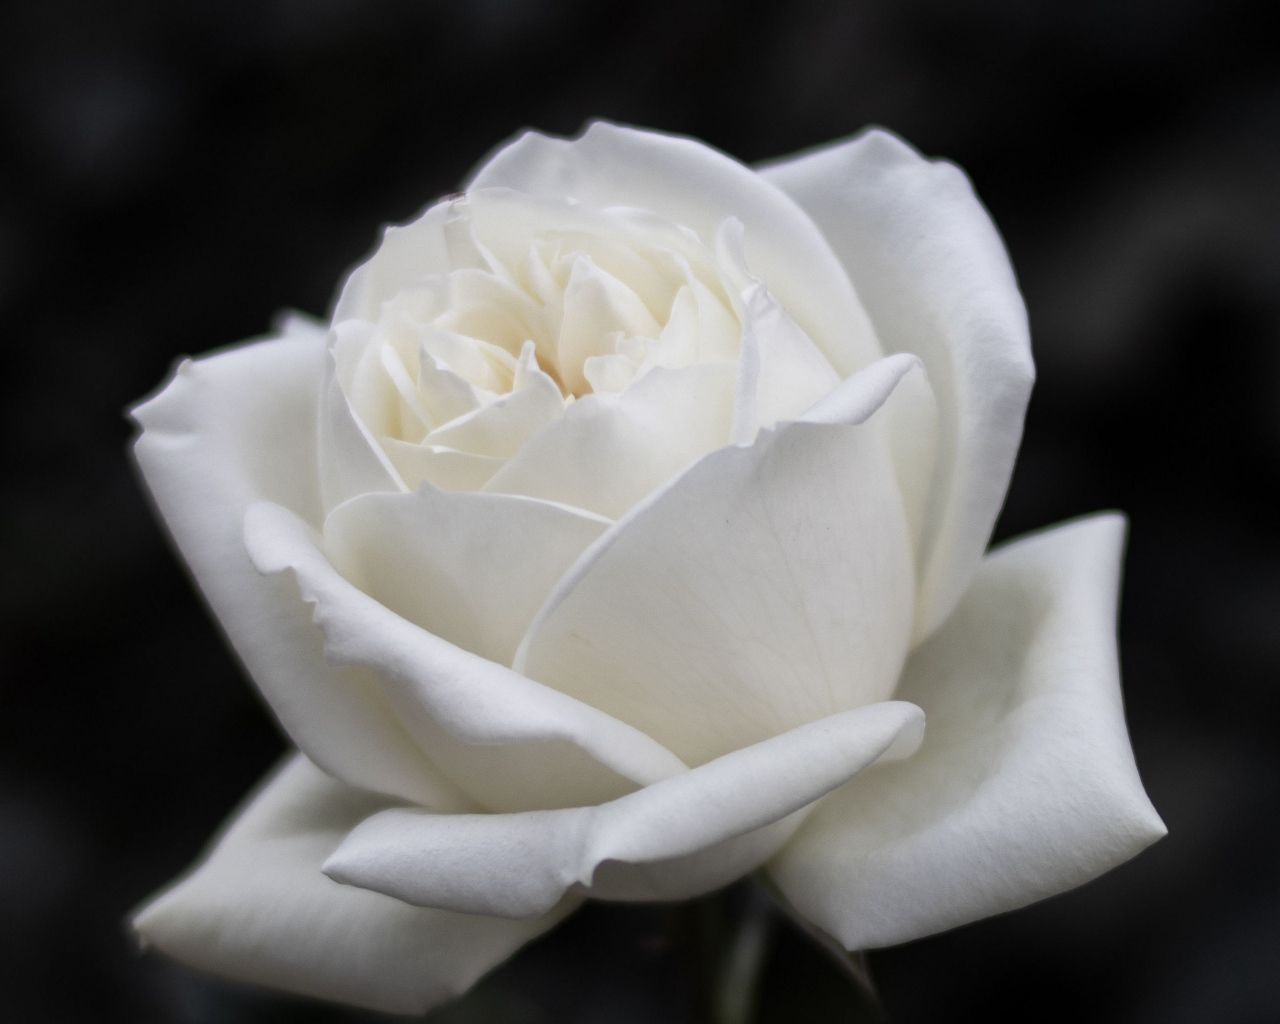 Красивый белый цветок розы на черном фоне 